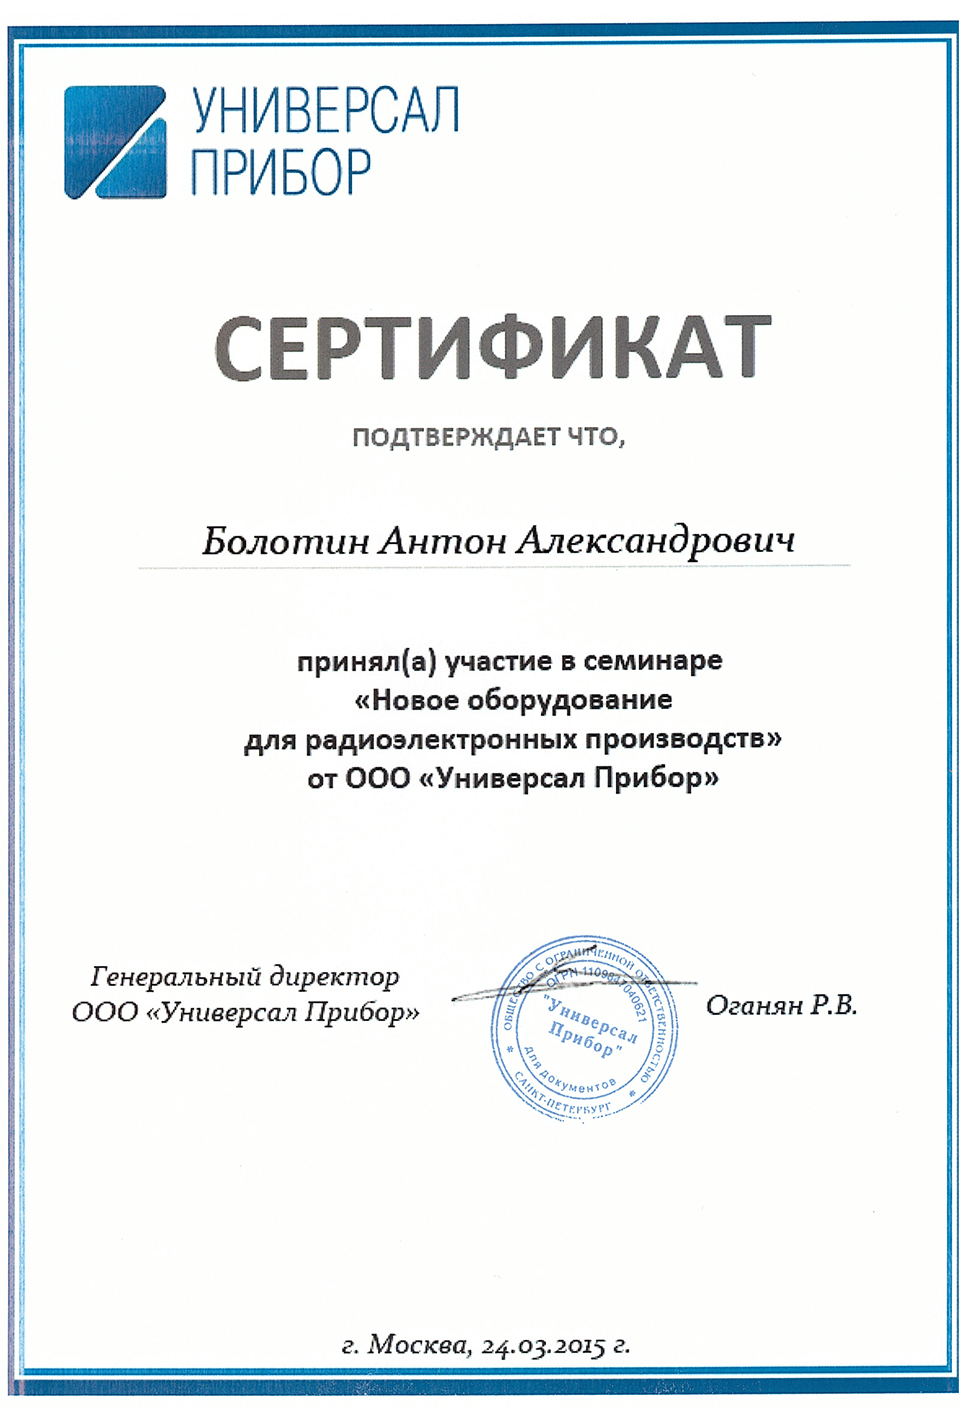 Сертификат участника семинара "Новое оборудование для радиоэлектронных производств".